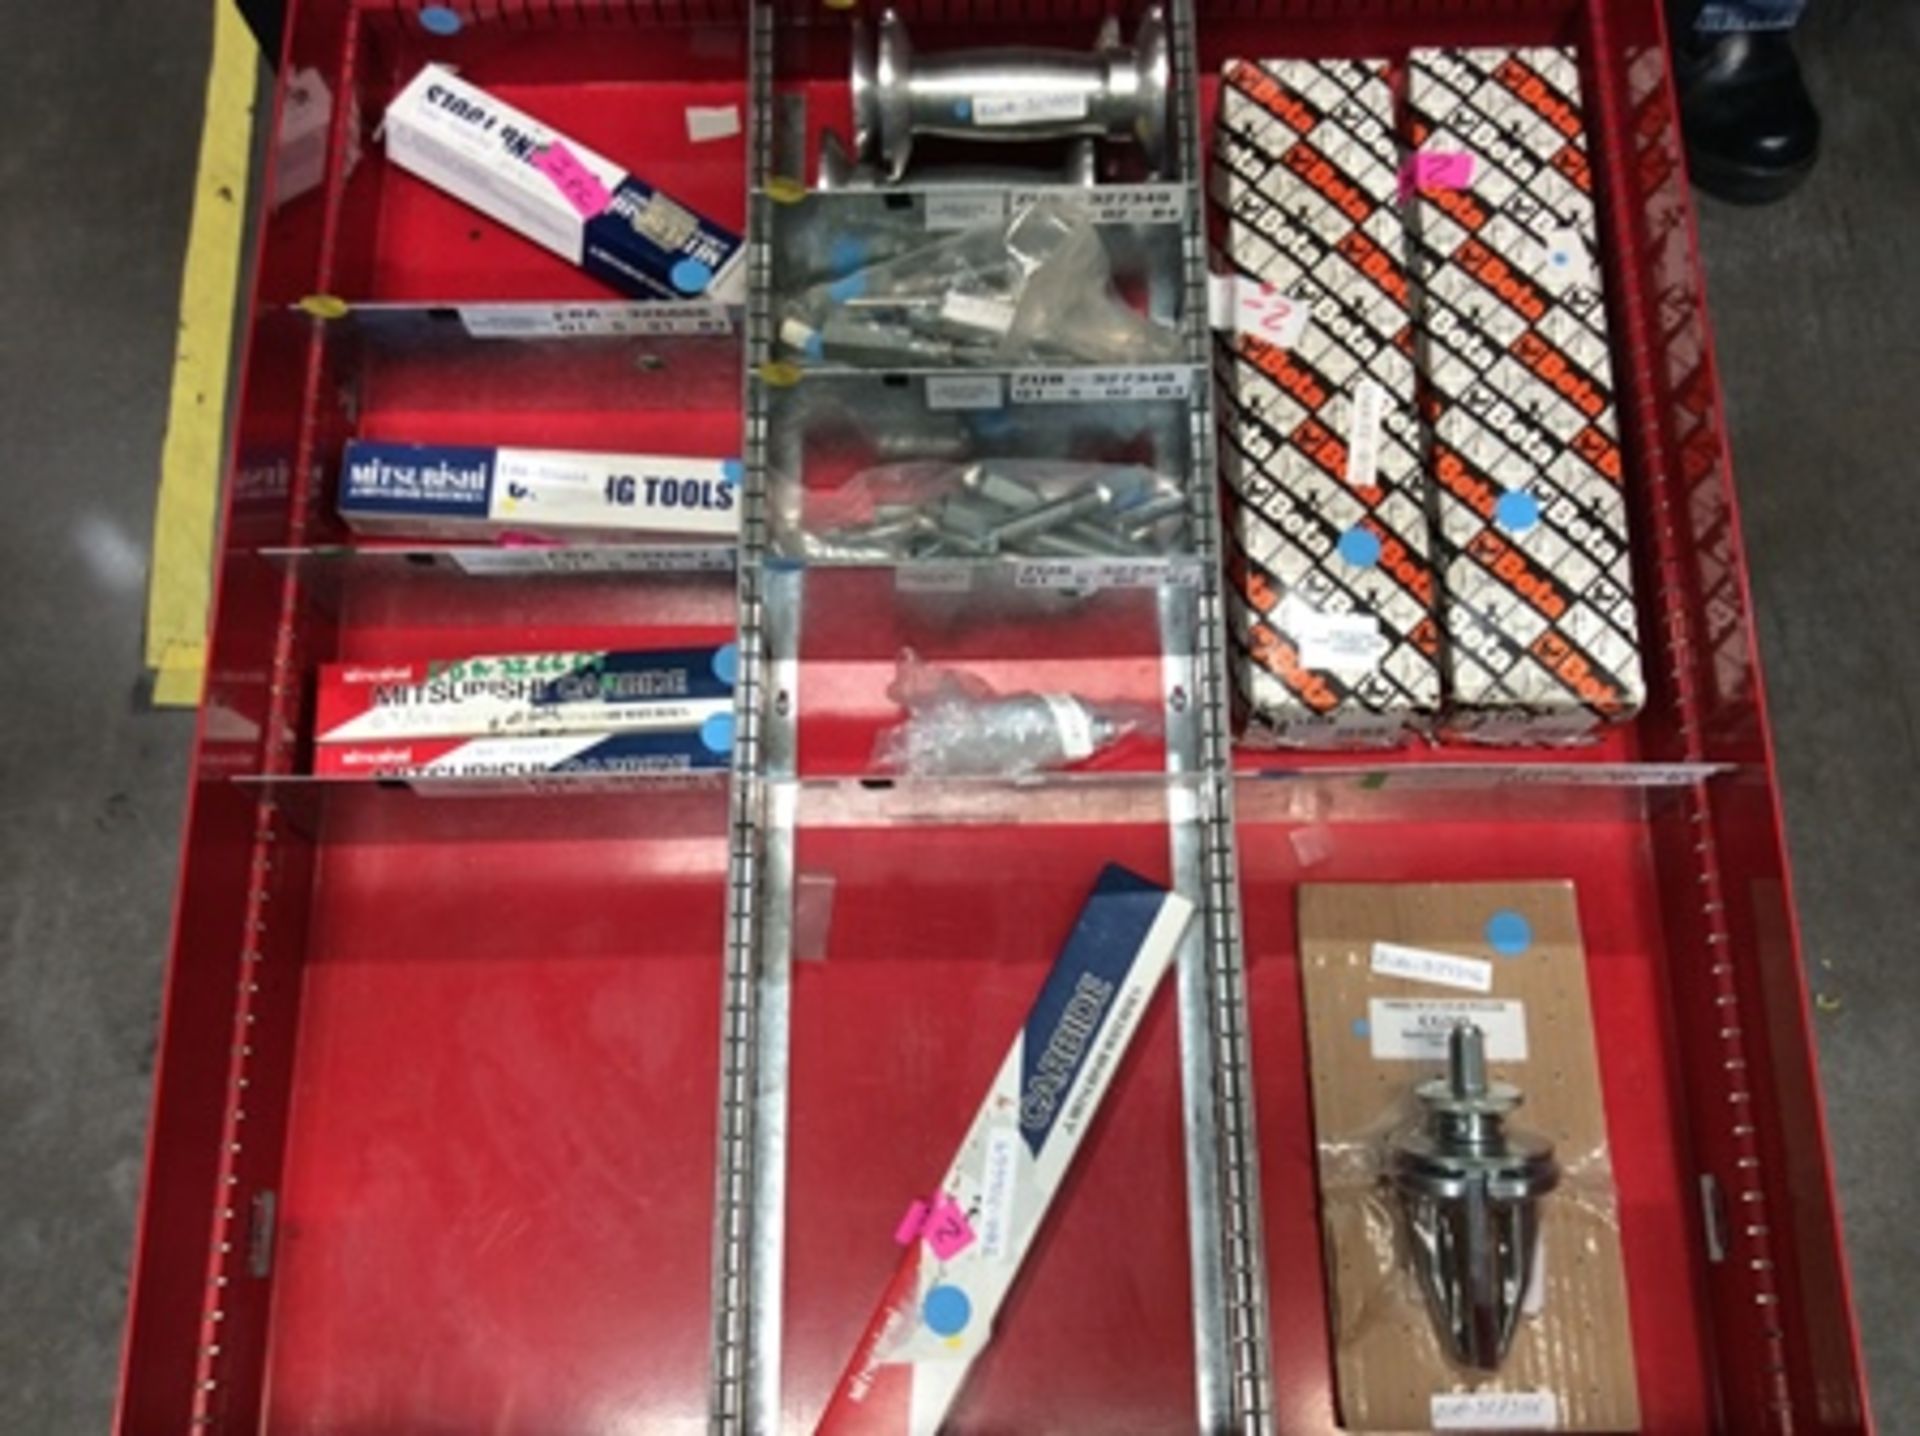 Gaveta de herramientas con 7 cajones que contiene; brocas, insertos, porta insertos, machuelos , - Image 7 of 21